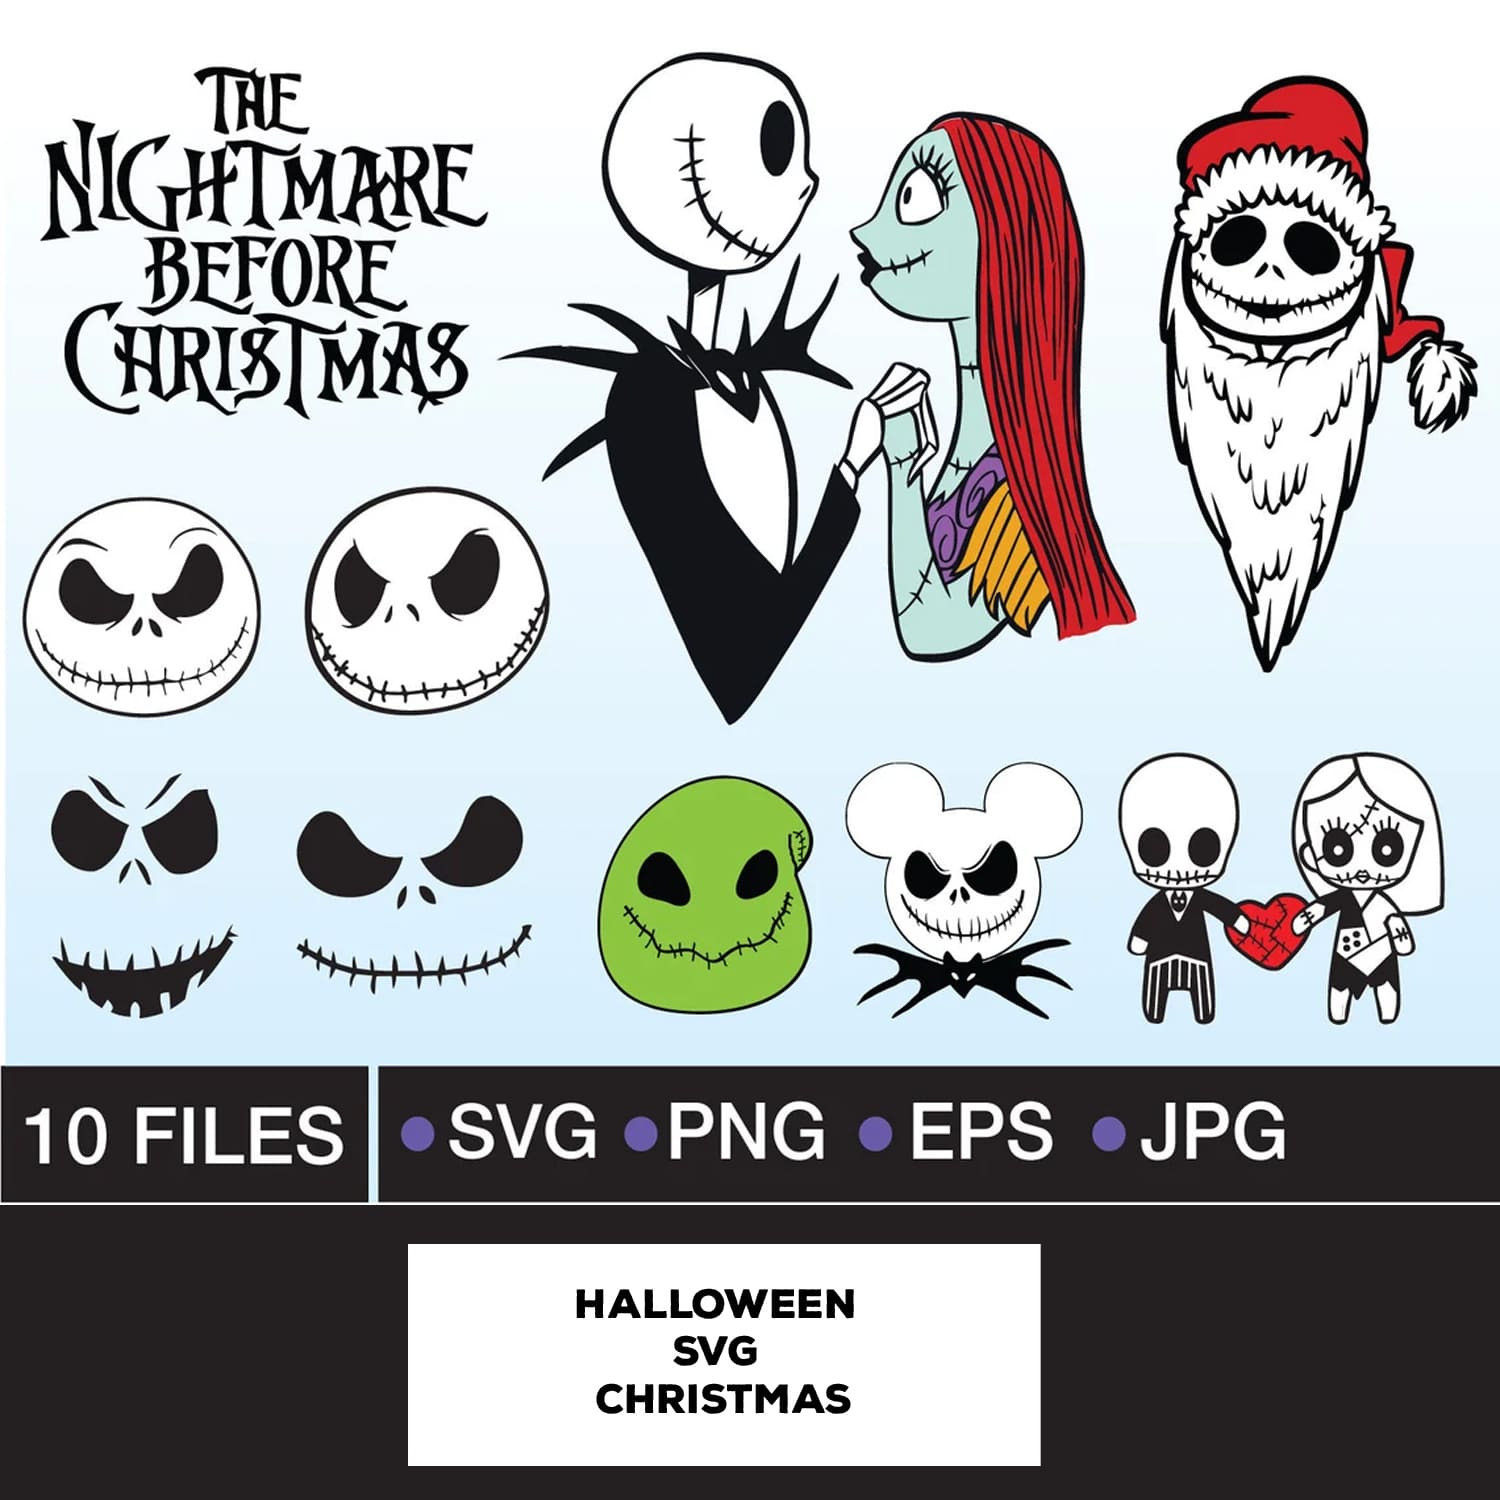 Halloween SVG Christmas cover image.